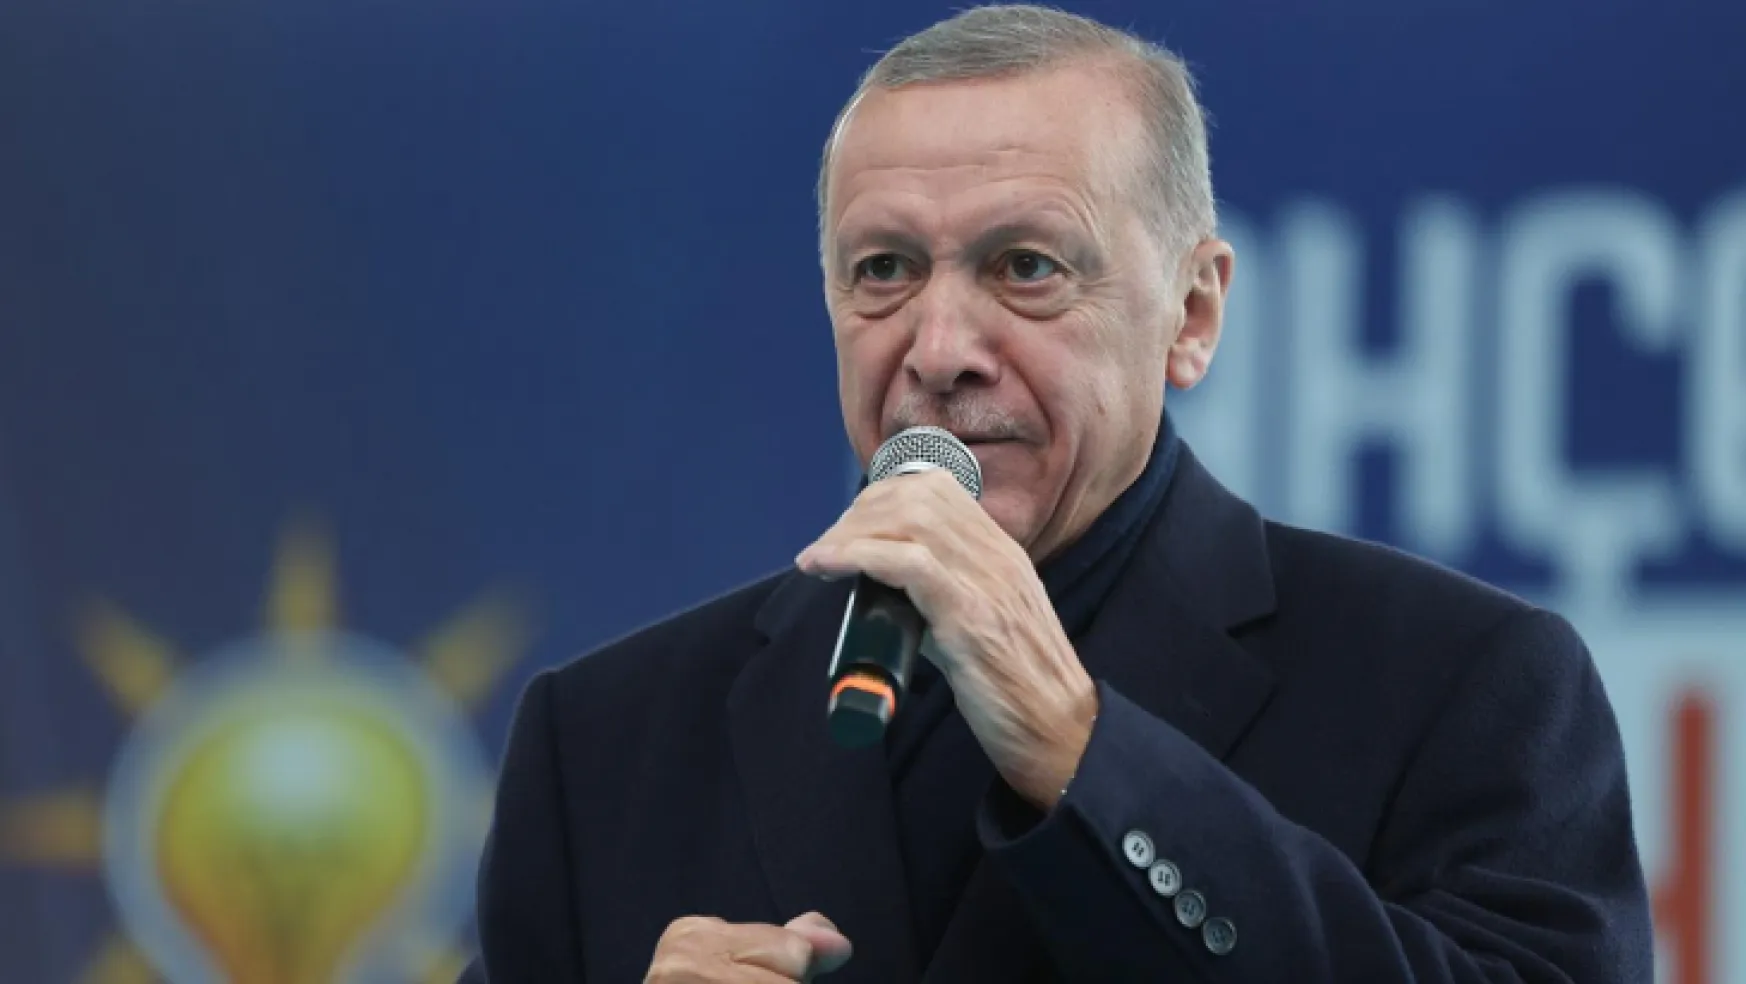 Erdoğan: 28 Mayıs'ı Türkiye Yüzyılı'nın müjdecisi haline getireceğiz